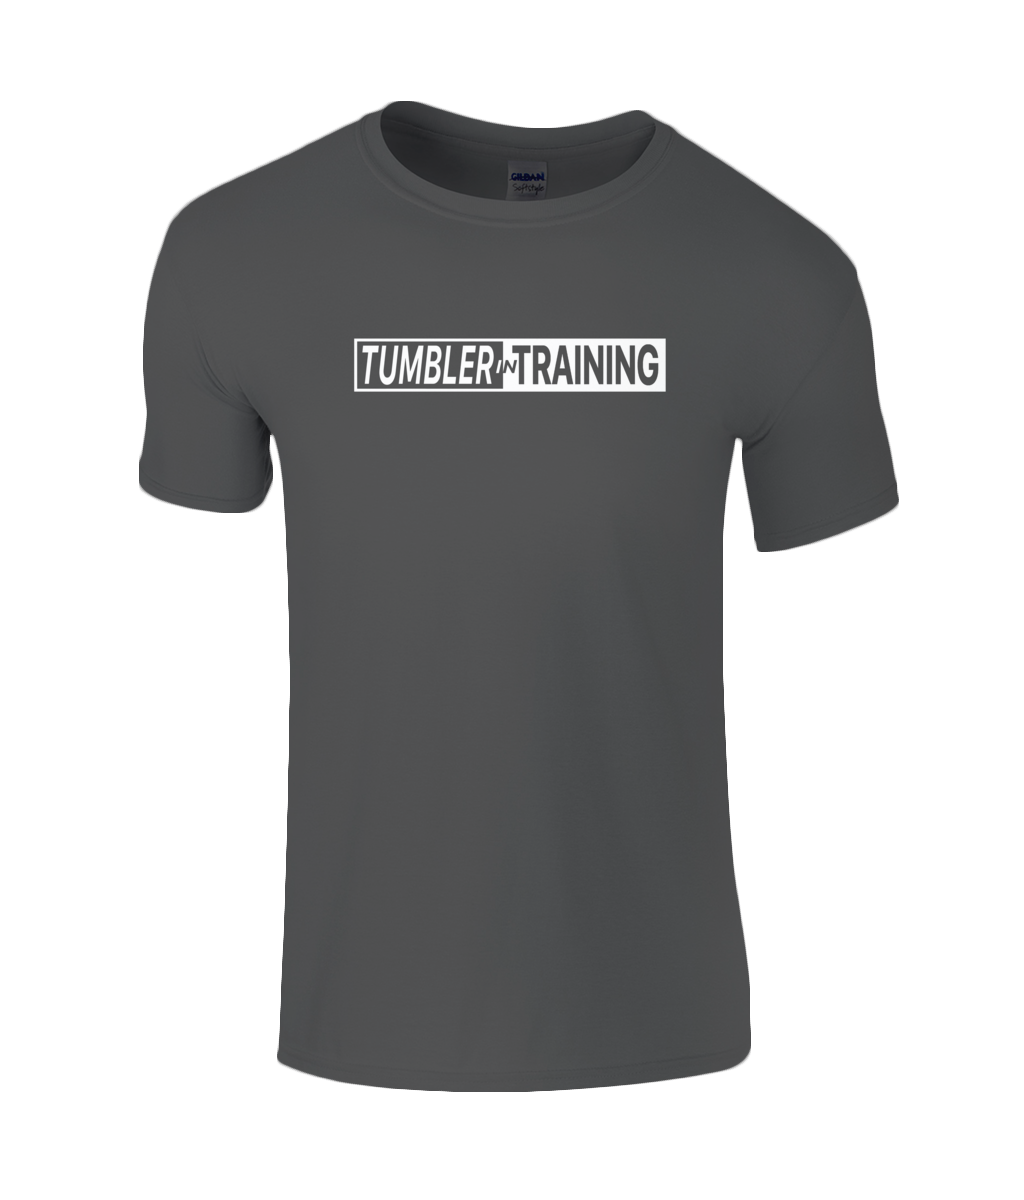 CIP: Tumbler in Training Kids T-Shirt